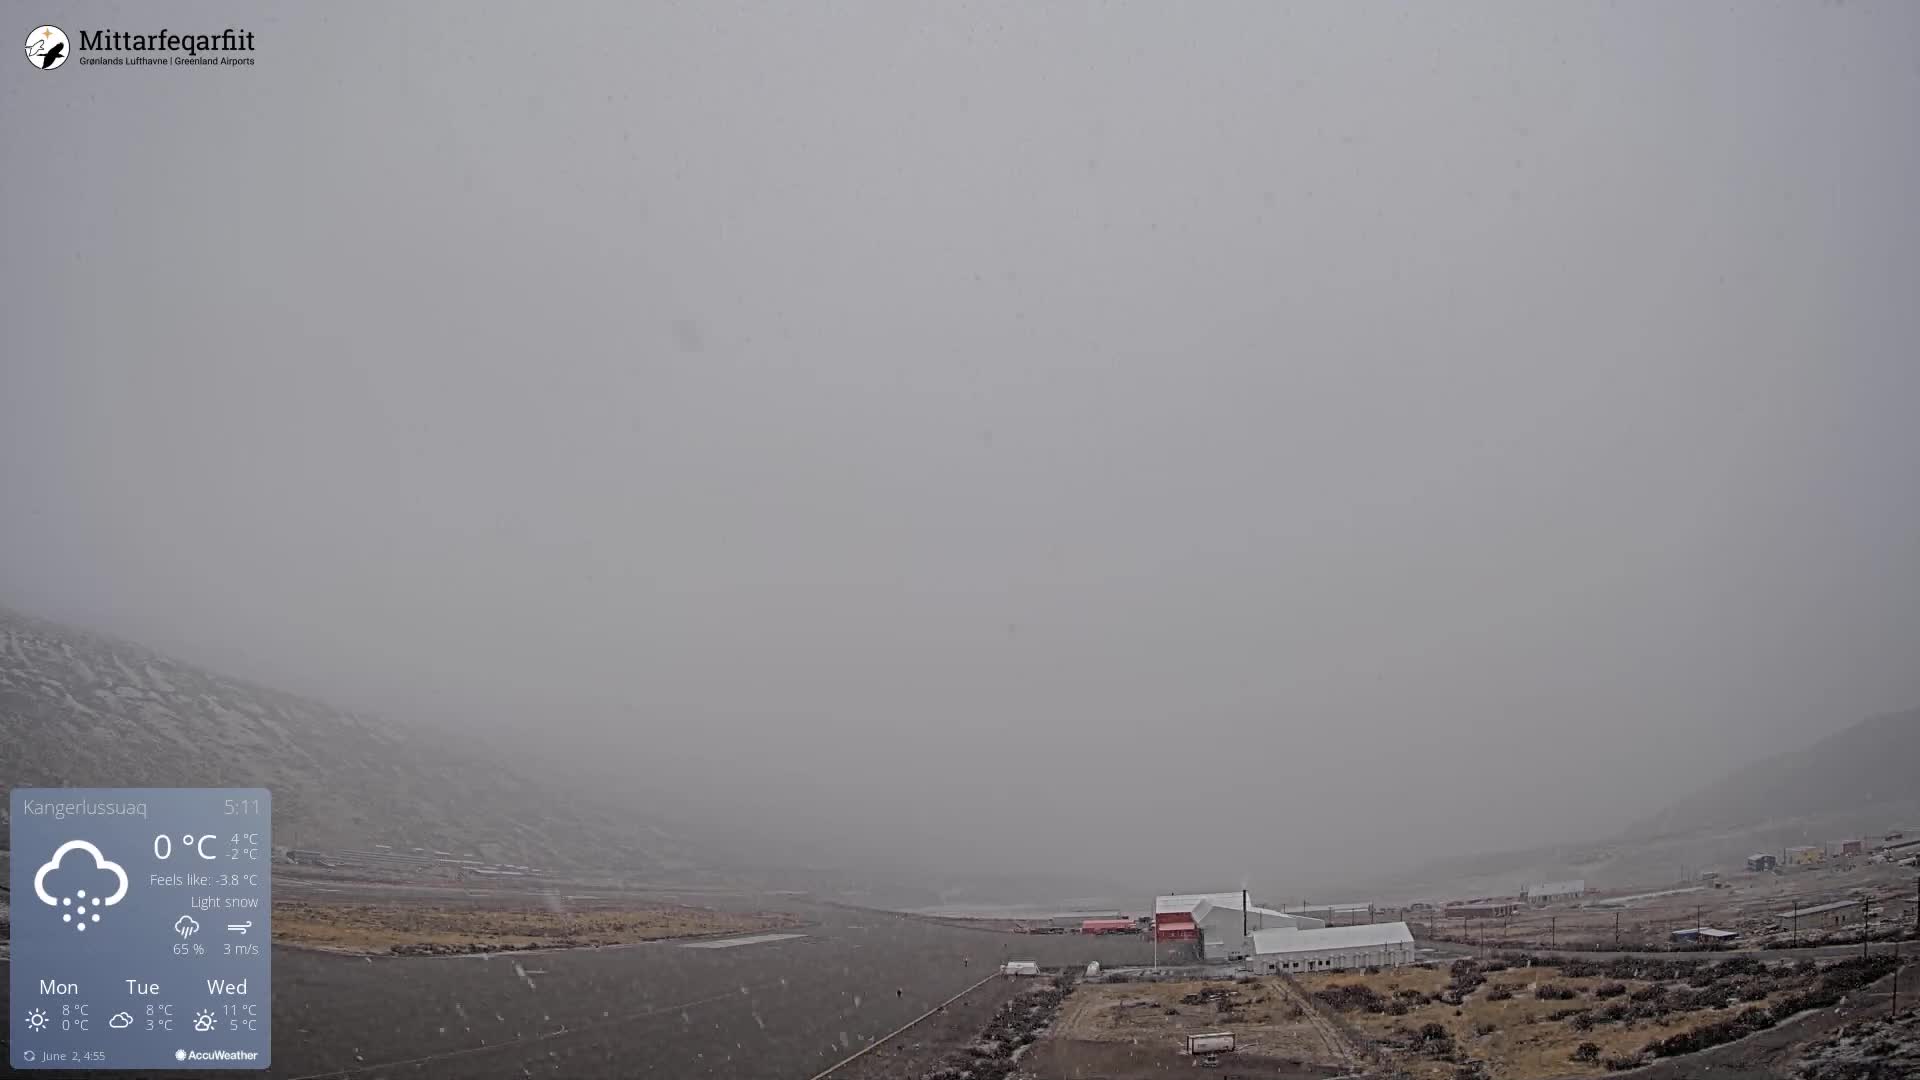 Kangerlussuaq Mon. 04:35